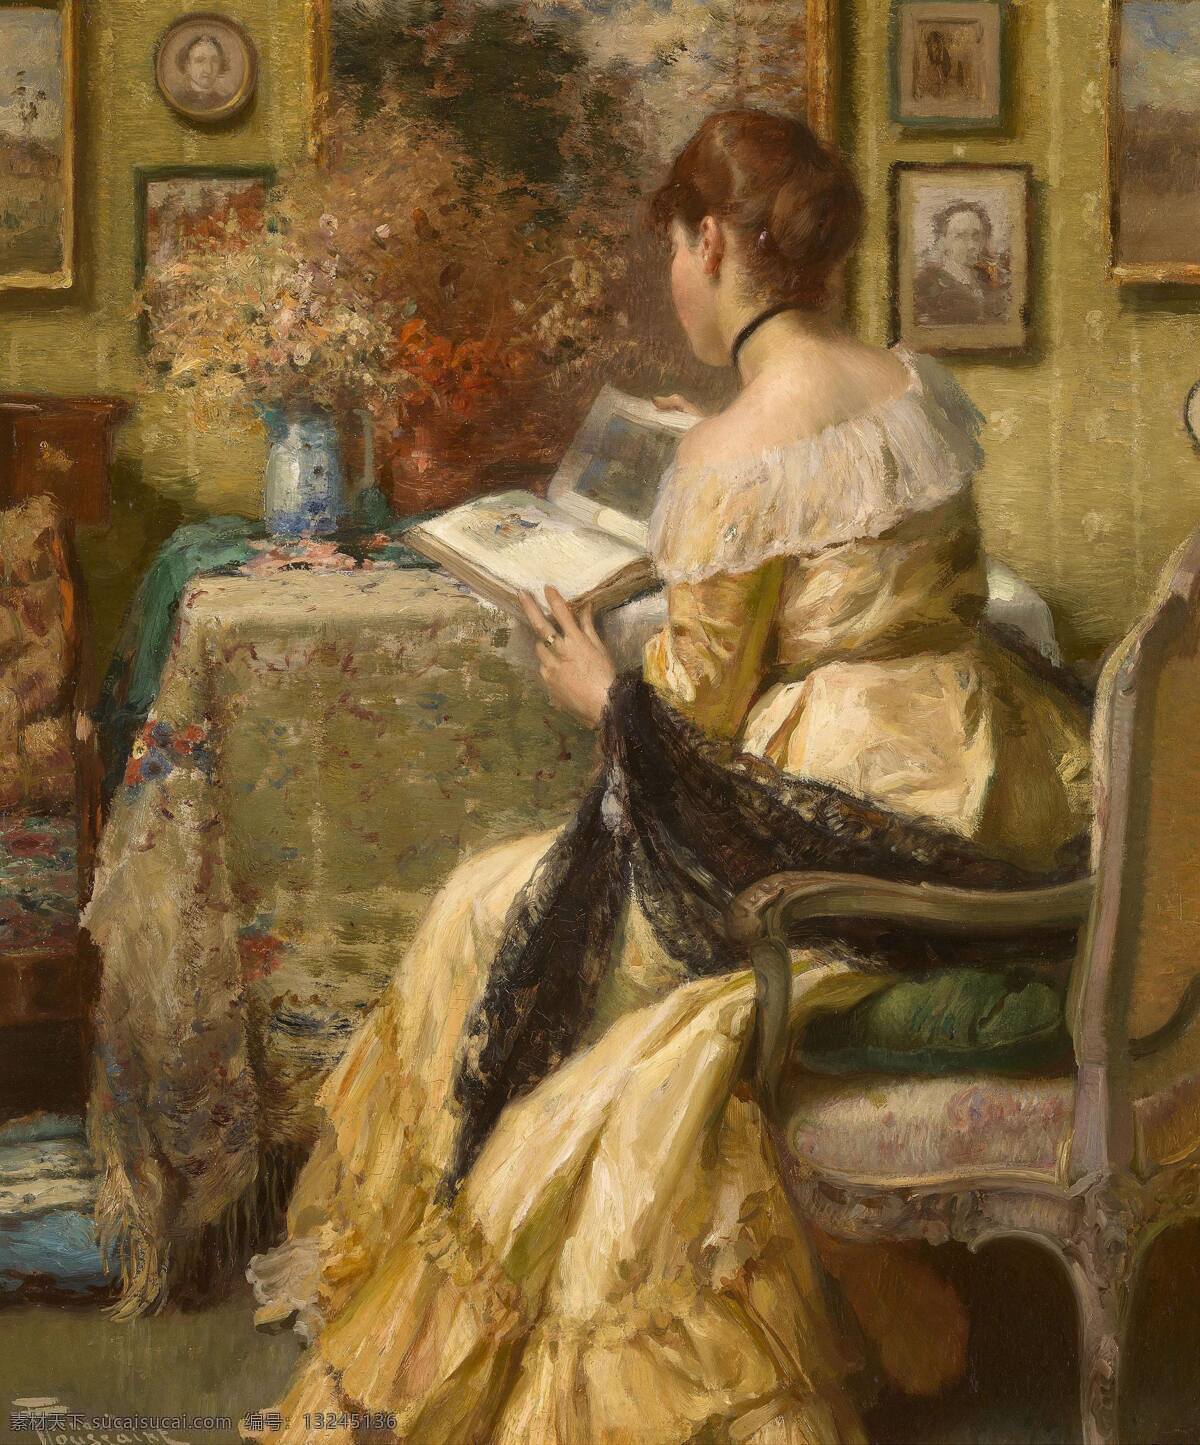 绘画书法 看书 女士 文化艺术 油画 阅读 阅读设计素材 阅读模板下载 贵族之家 背坐 19世纪油画